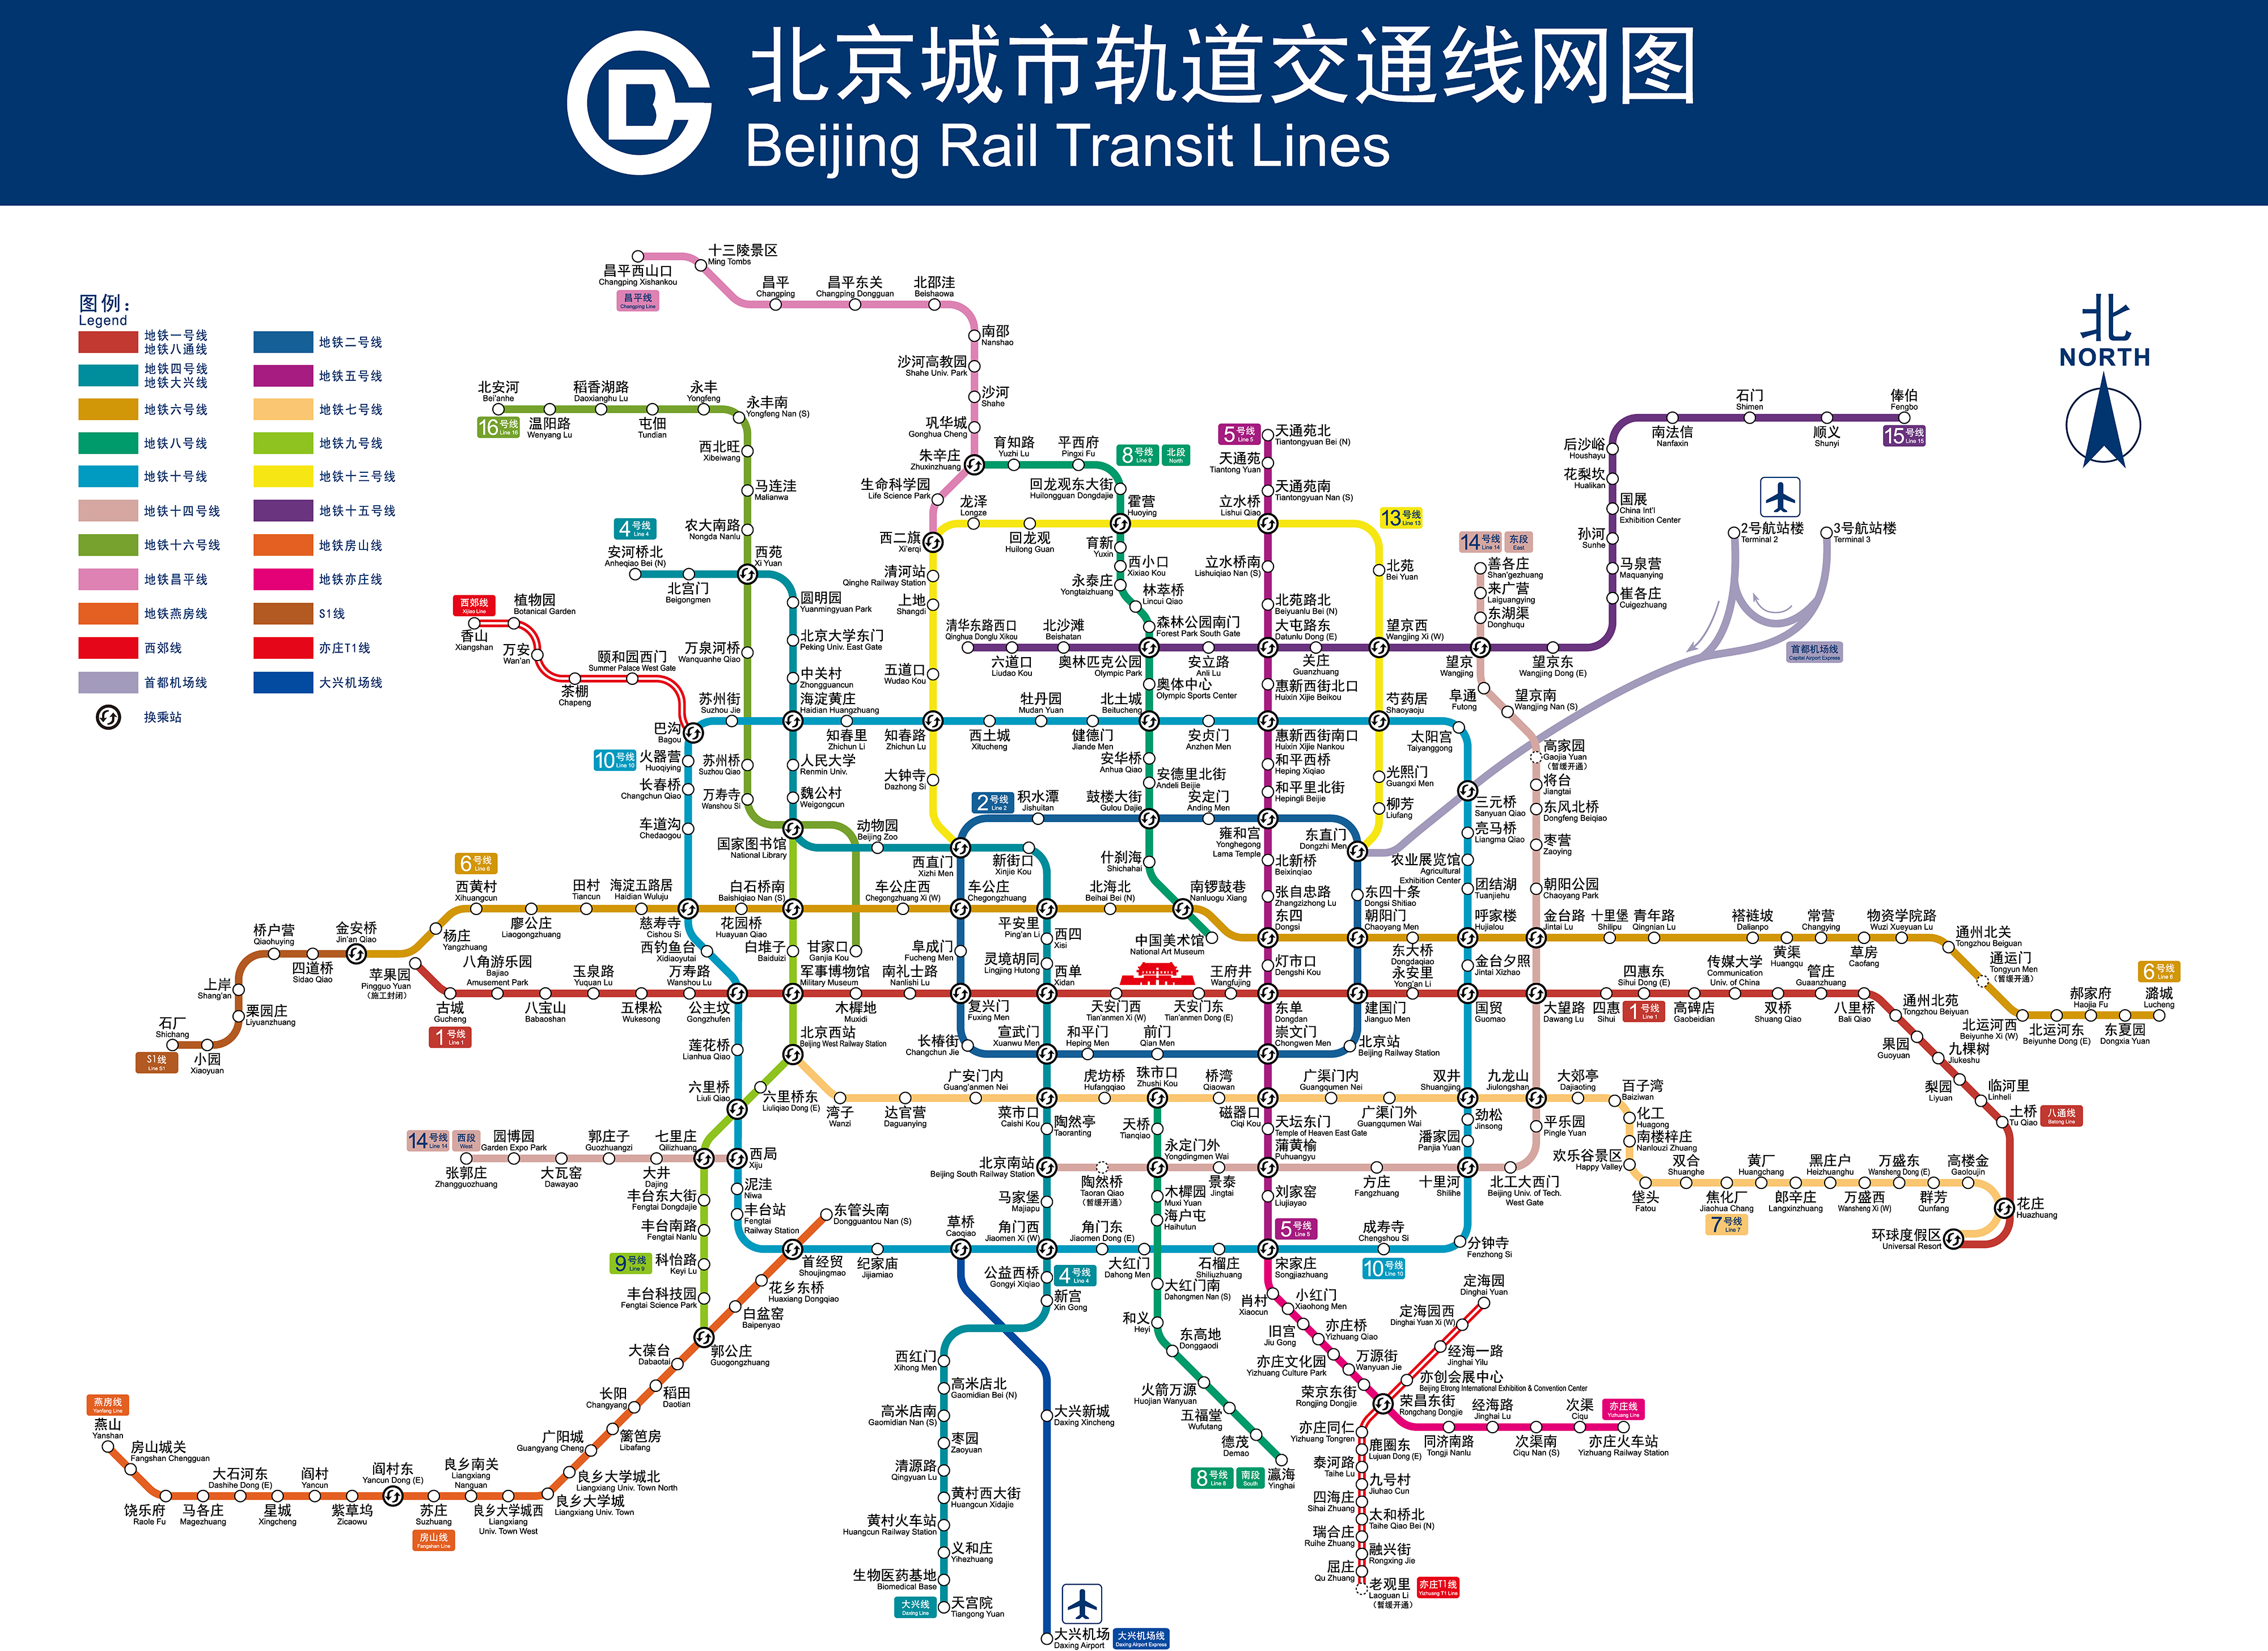 线由北京地铁运营;  4,14,16,大兴线由京港地铁运营;  燕房,大兴机场